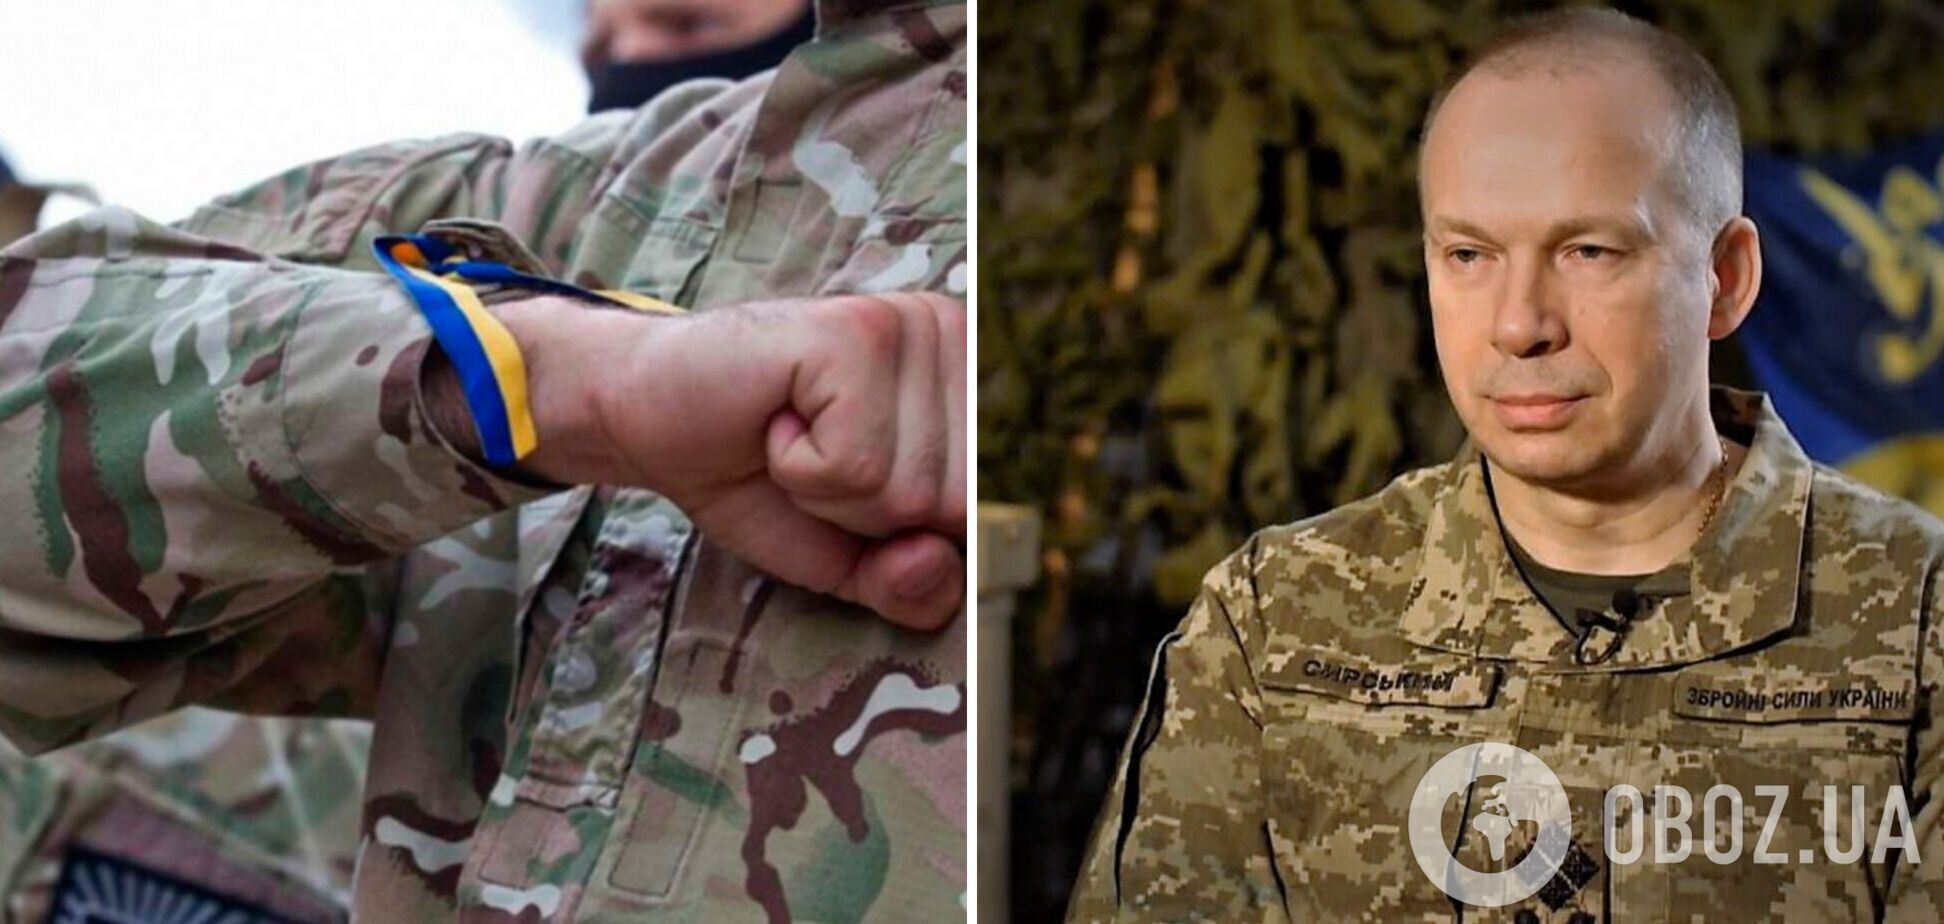 'Украина существует, пока есть кому ее защищать': Сырский поздравил украинцев с Днем добровольца и отметил подвиг Героев